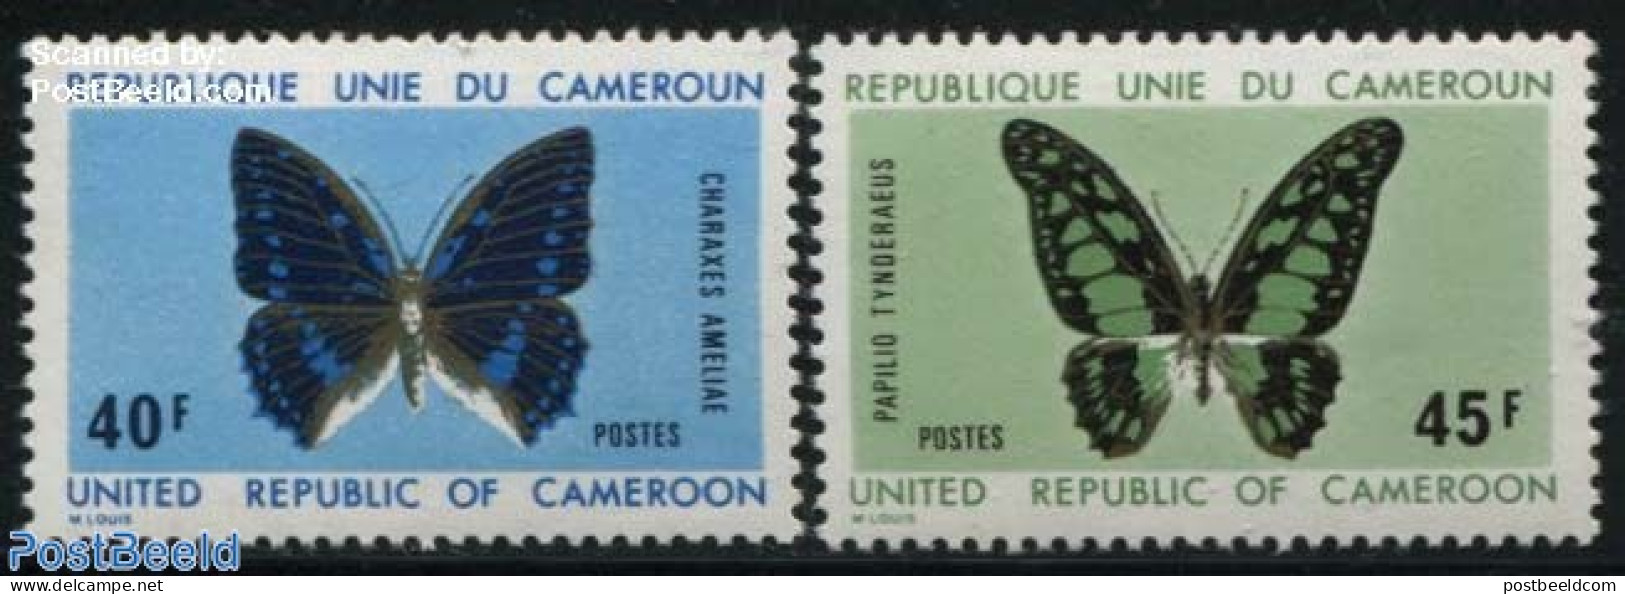 Cameroon 1972 Butterflies 2v, Mint NH, Nature - Butterflies - Kamerun (1960-...)